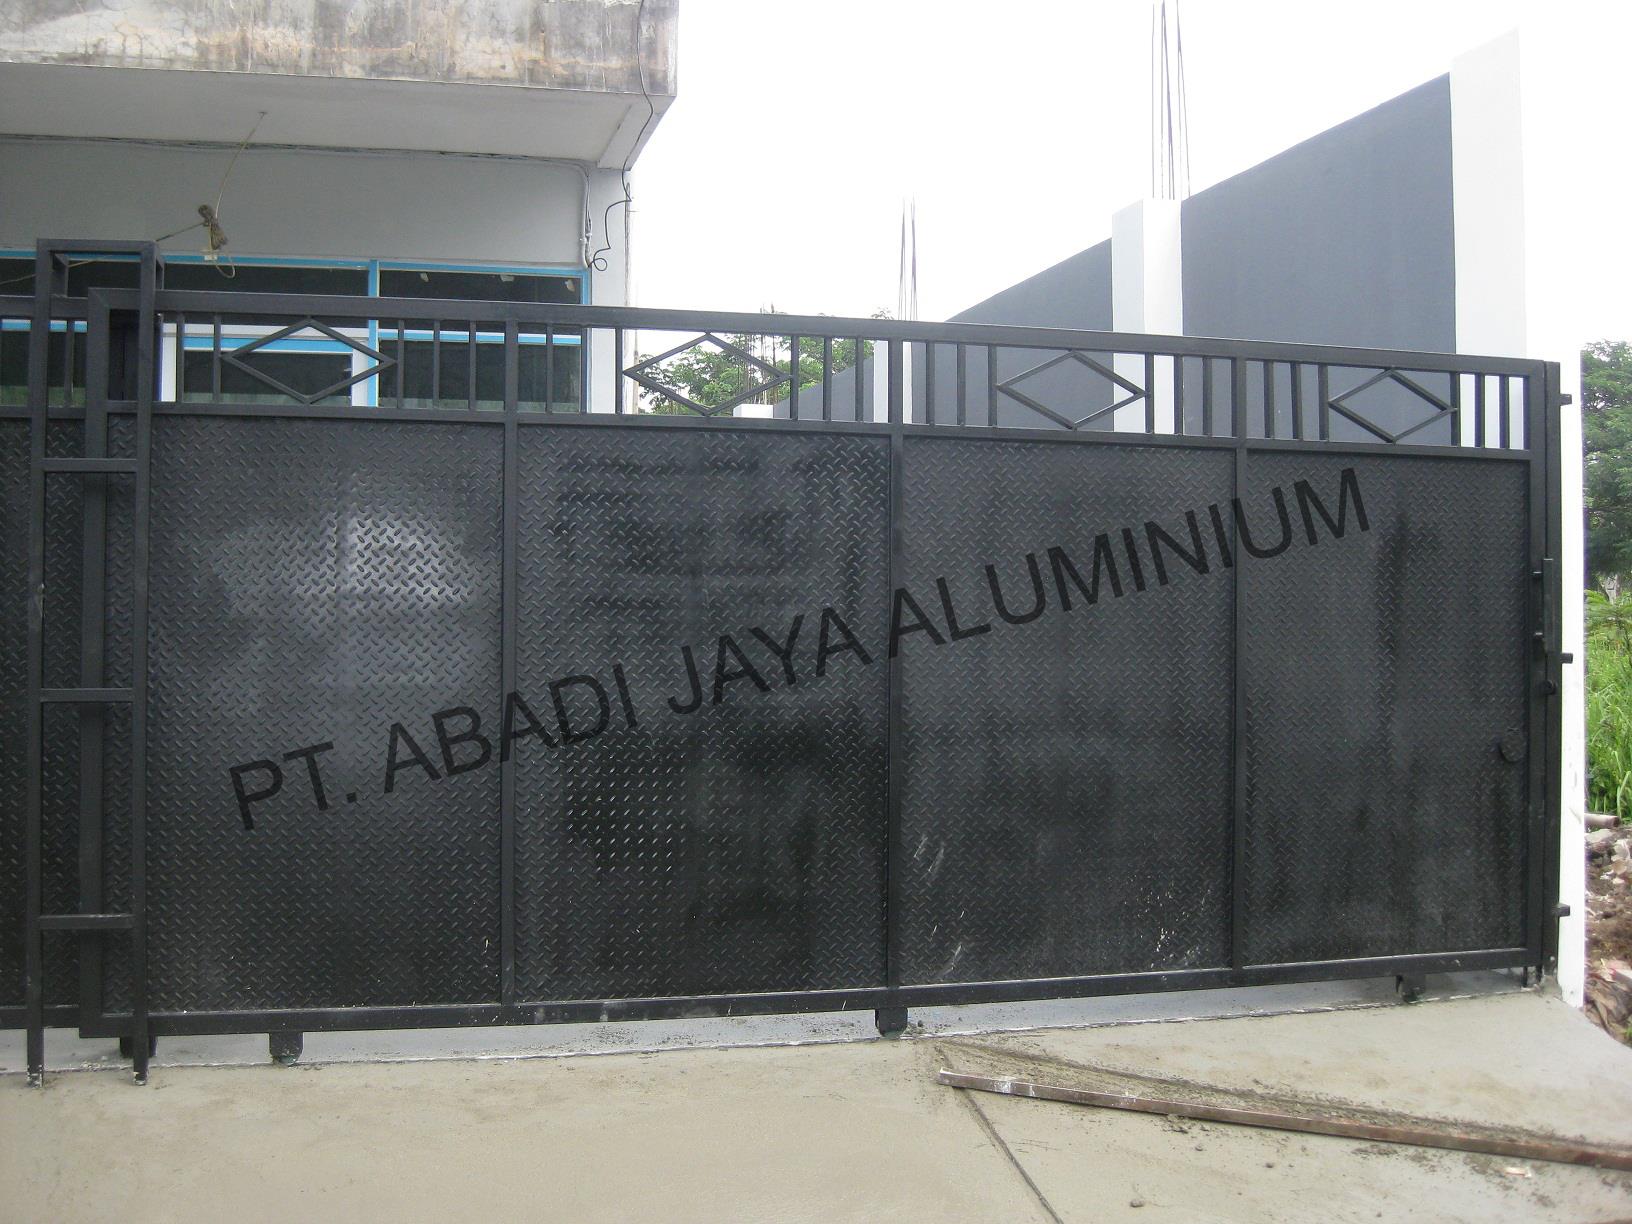 Jual Pagar Besi Harga Murah Jakarta Oleh PT Abadi Jaya Aluminium